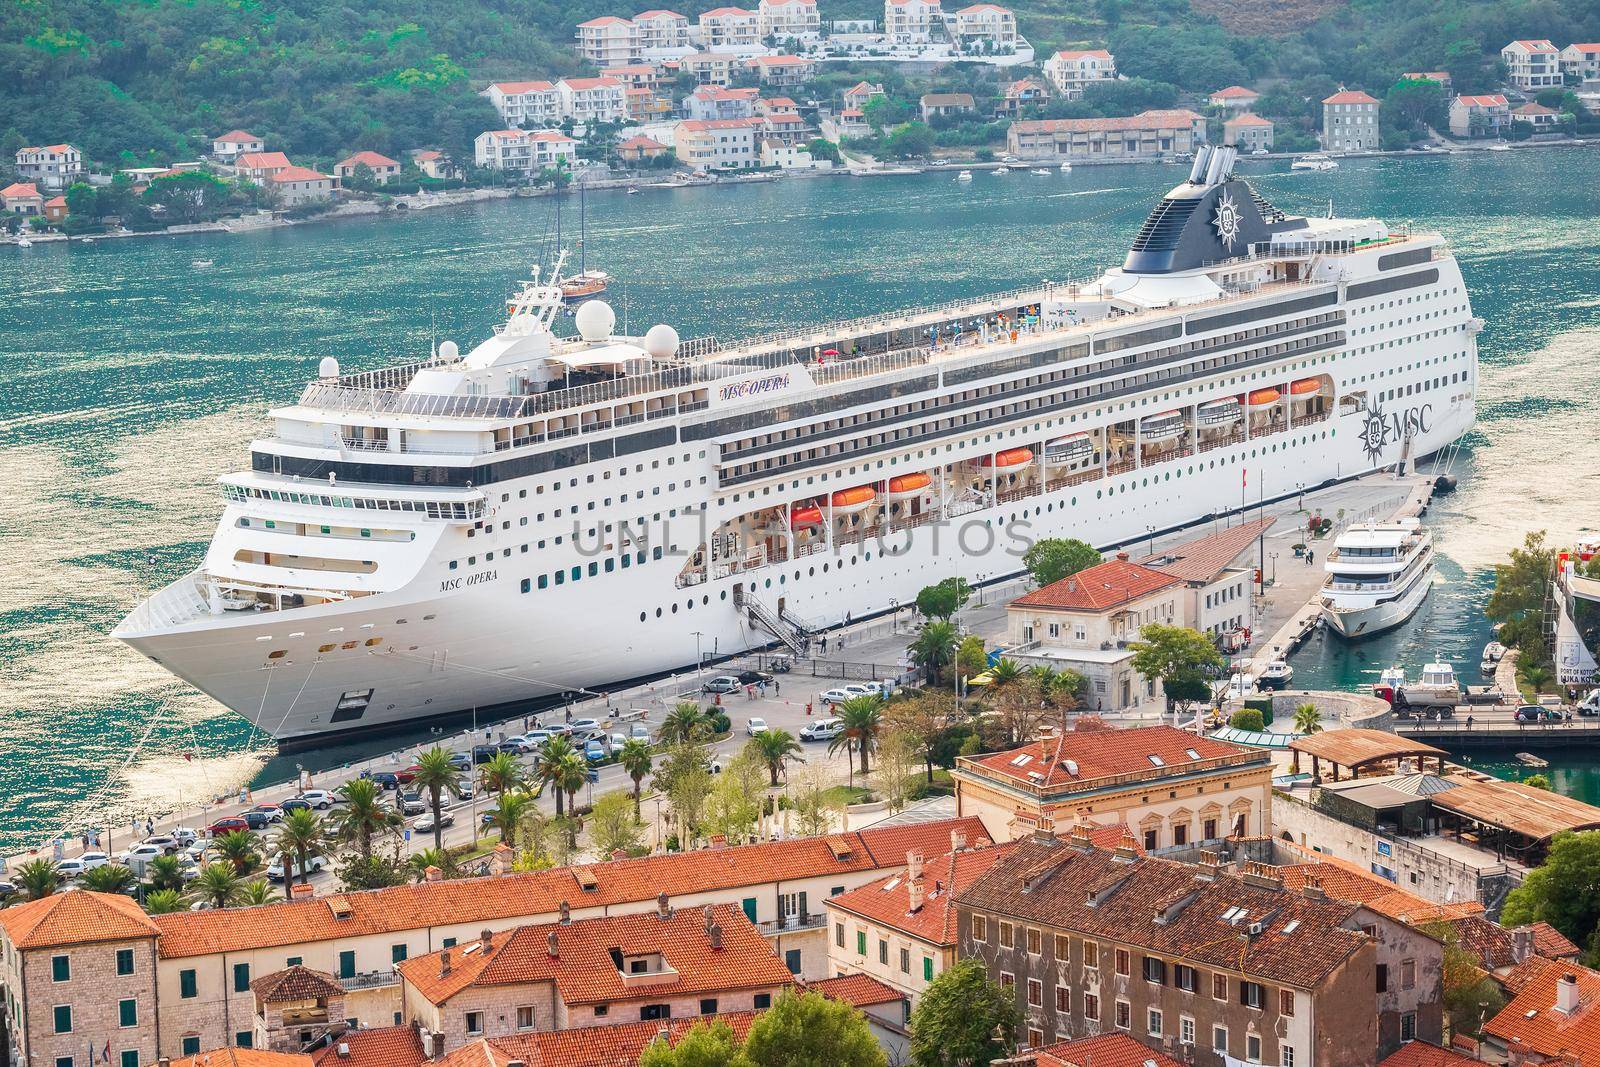 KOTOR, MONTENEGRO - September 16, 2019: Large cruise ship arrived in the bay of Kotor, Montenegro